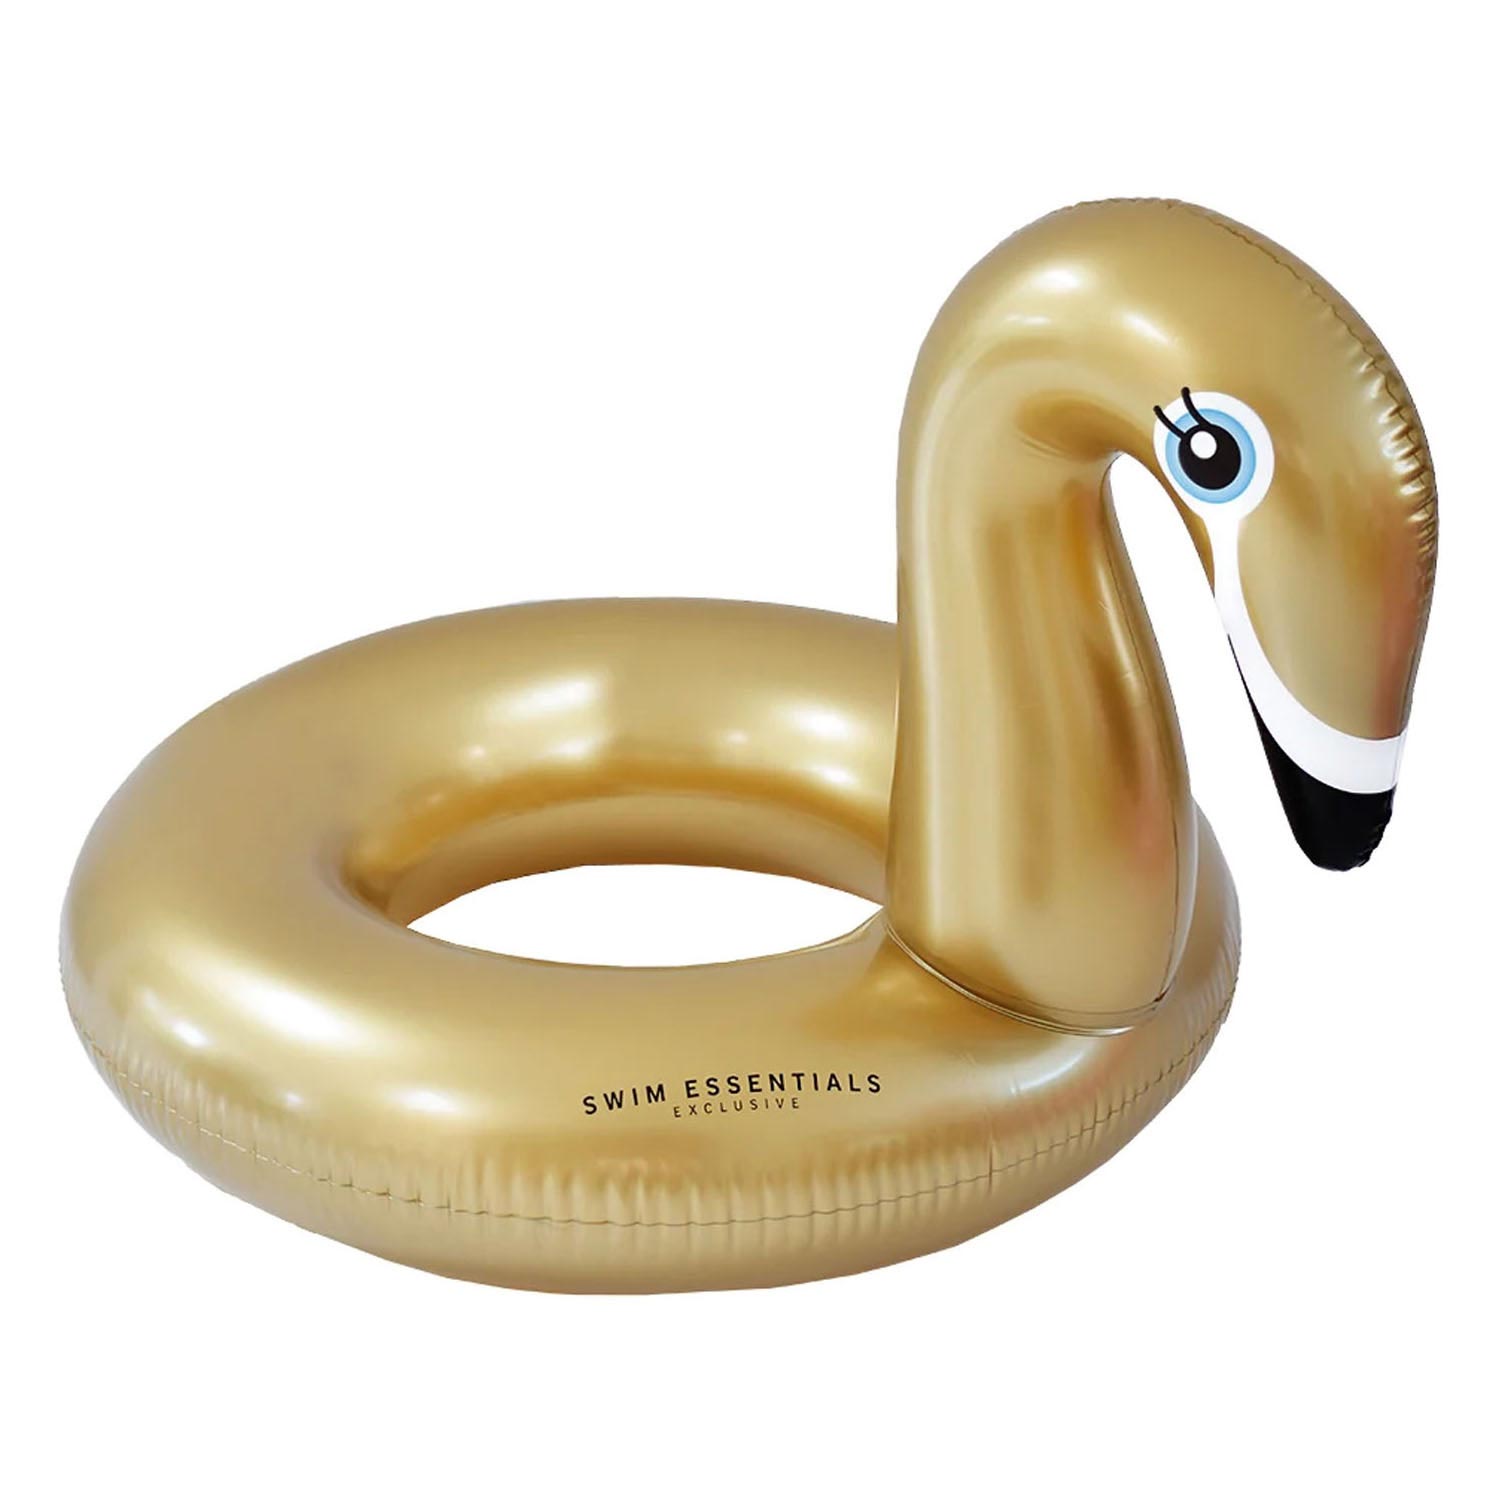 Bouée de natation Golden Swan, 95cm